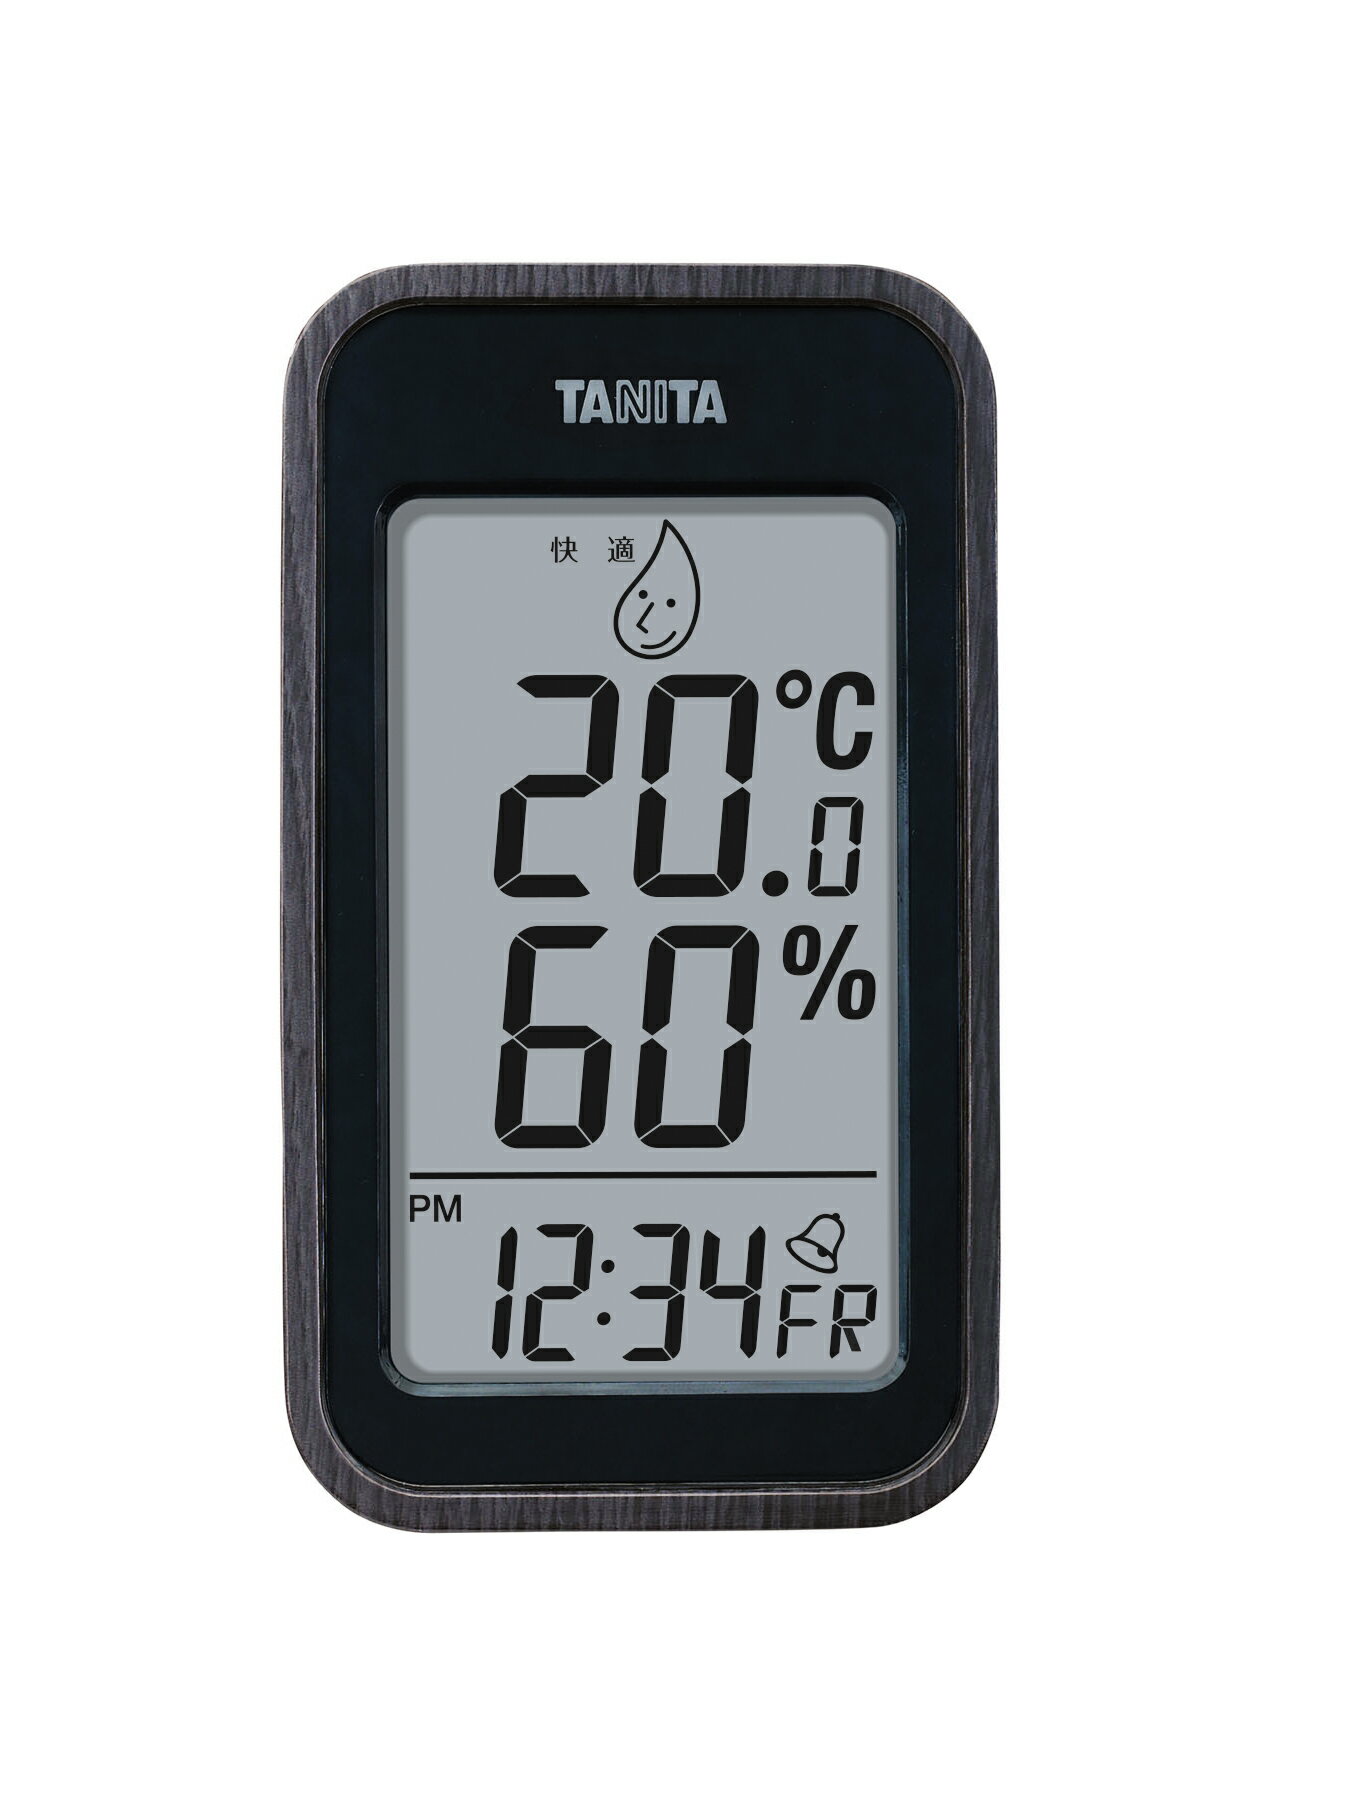 タニタ デジタル温湿度計 コンディションセンサー TT-572-BK 黒 ブラック TANITA 温度 湿度 時計 アラーム カレンダー機能 木目調 おしゃれ 見やすい 多機能 置き時計 掛け時計 ギフト プレゼント 4904785557208 送料無料